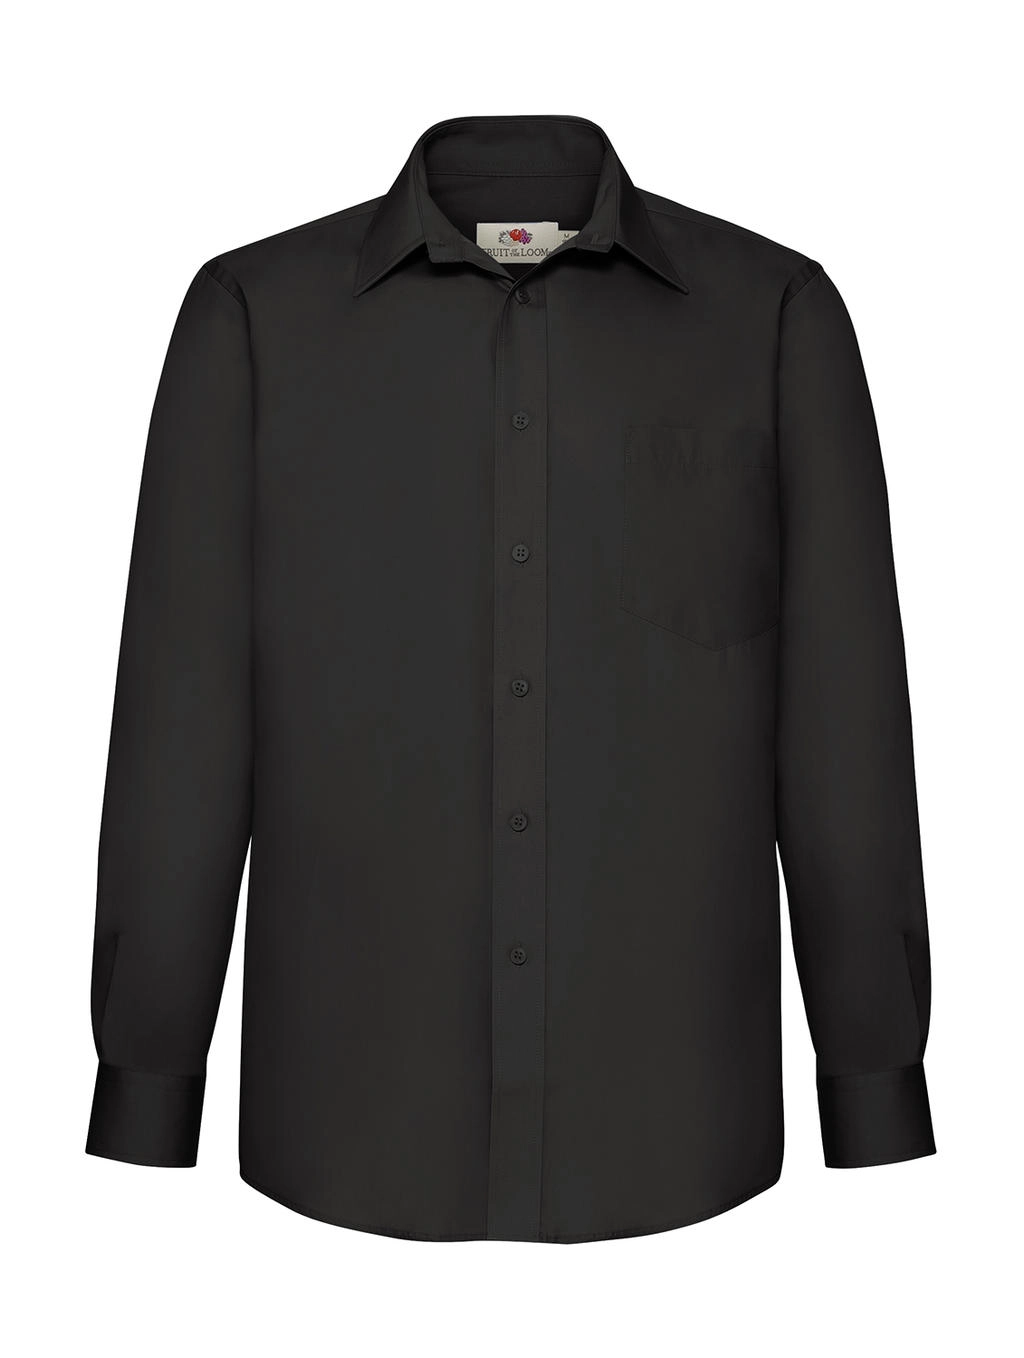 Poplin Shirt LS zum Besticken und Bedrucken in der Farbe Black mit Ihren Logo, Schriftzug oder Motiv.